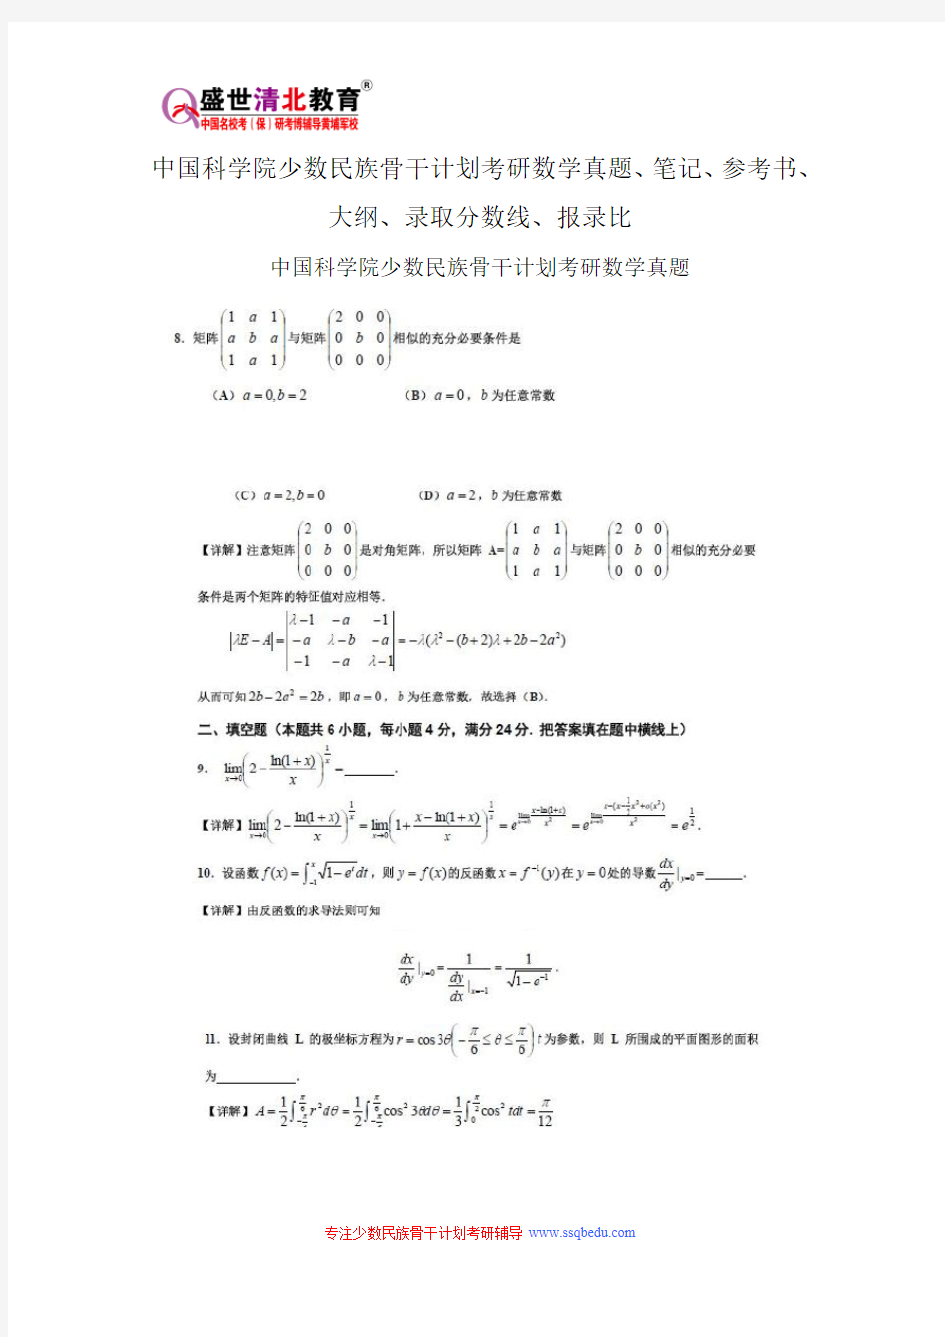 中国科学院少数民族骨干计划考研数学真题、笔记、参考书、大纲、录取分数线、报录比